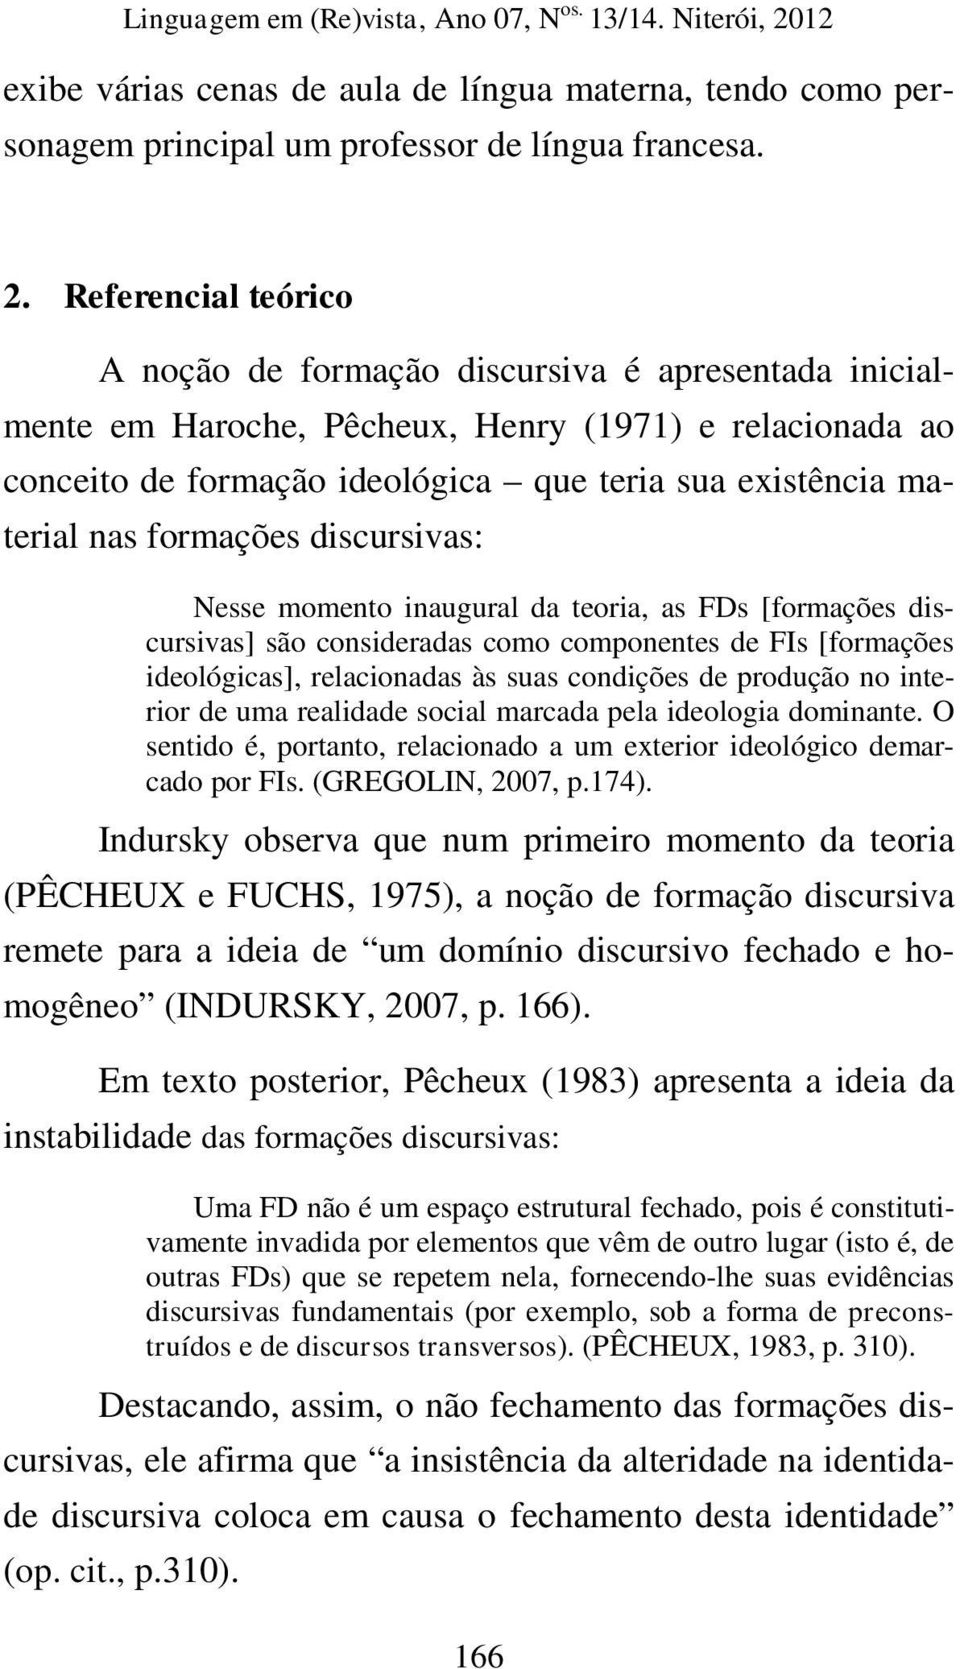 formações discursivas: Nesse momento inaugural da teoria, as FDs [formações discursivas] são consideradas como componentes de FIs [formações ideológicas], relacionadas às suas condições de produção